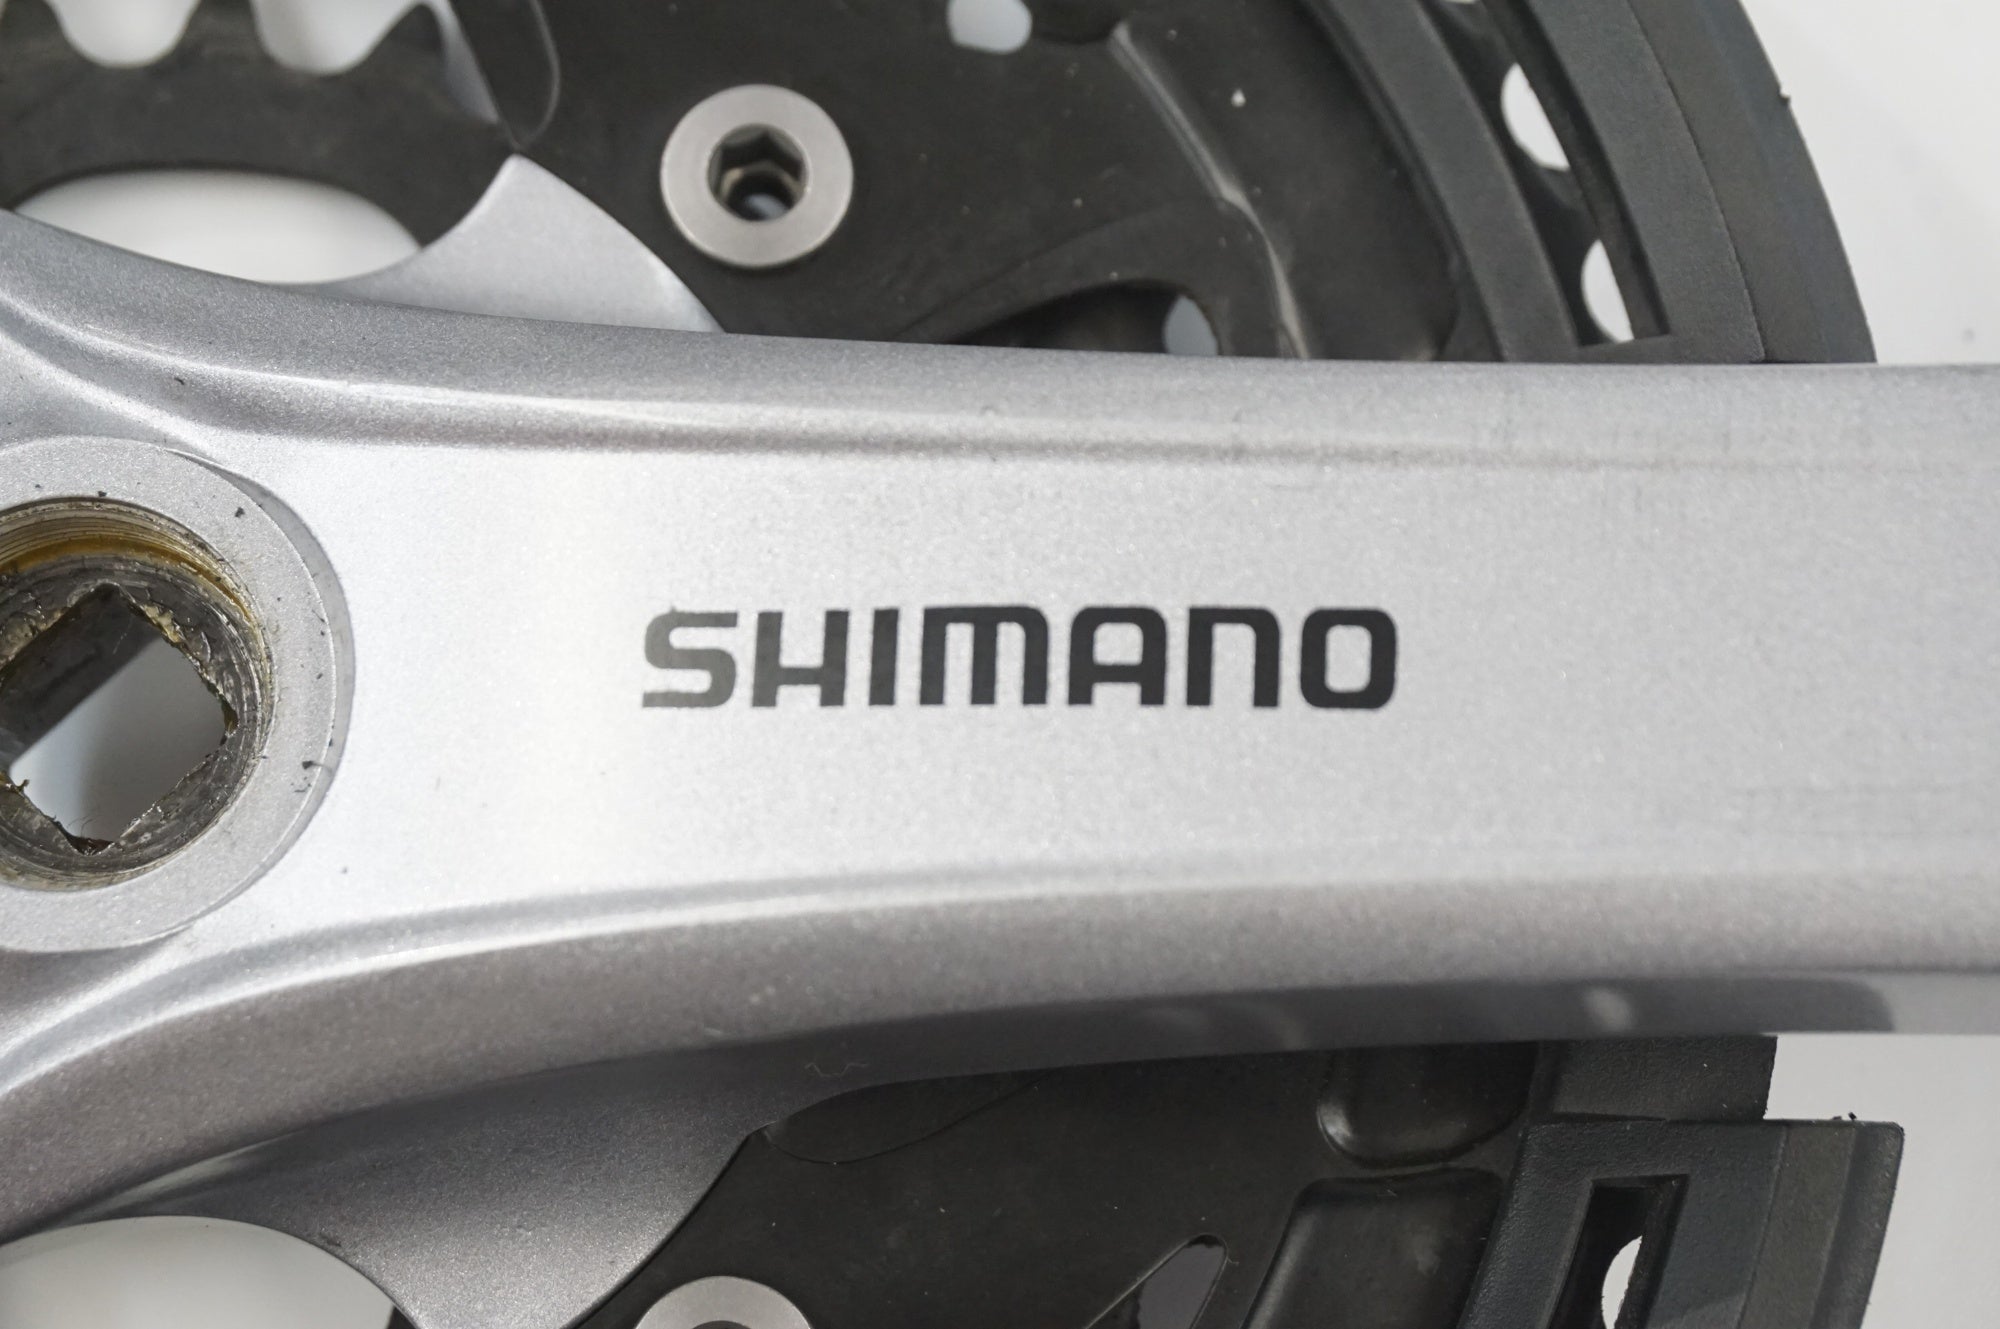 SHIMANO 「シマノ」 FC-T3010 48-36-26T 175mm クランク / 福岡アイランドシティ店